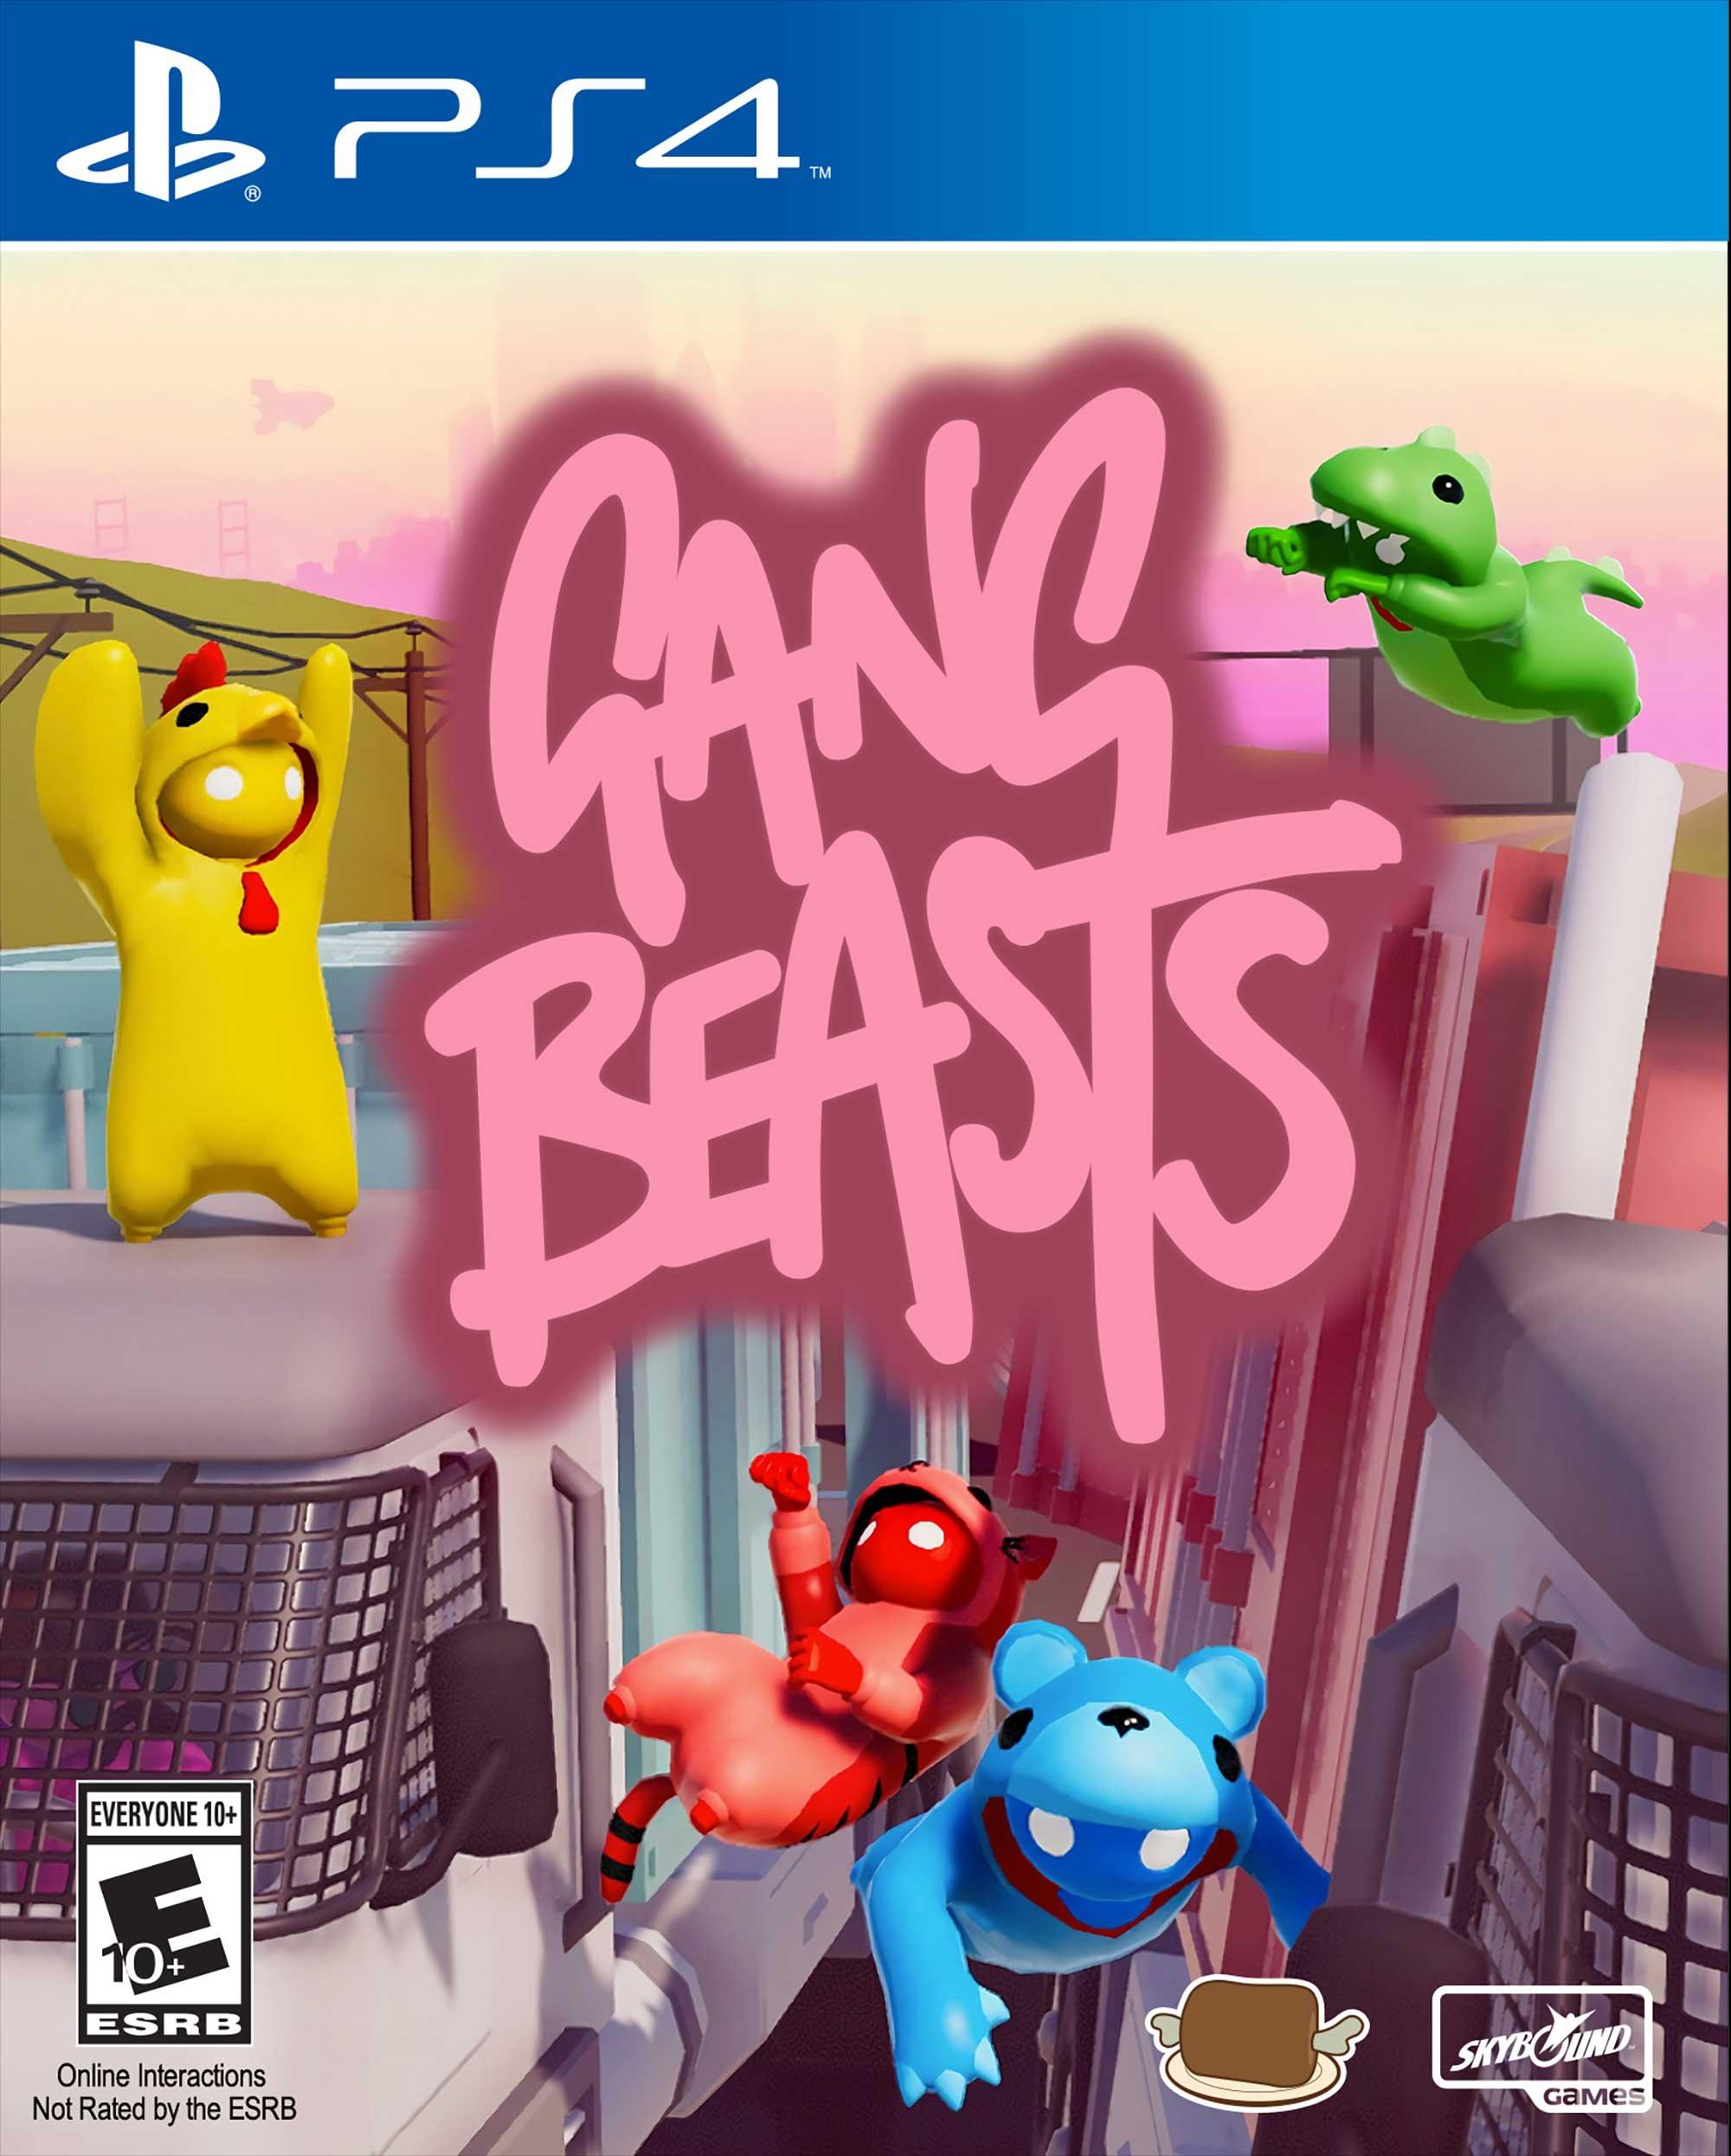 gang beasts playstation 4